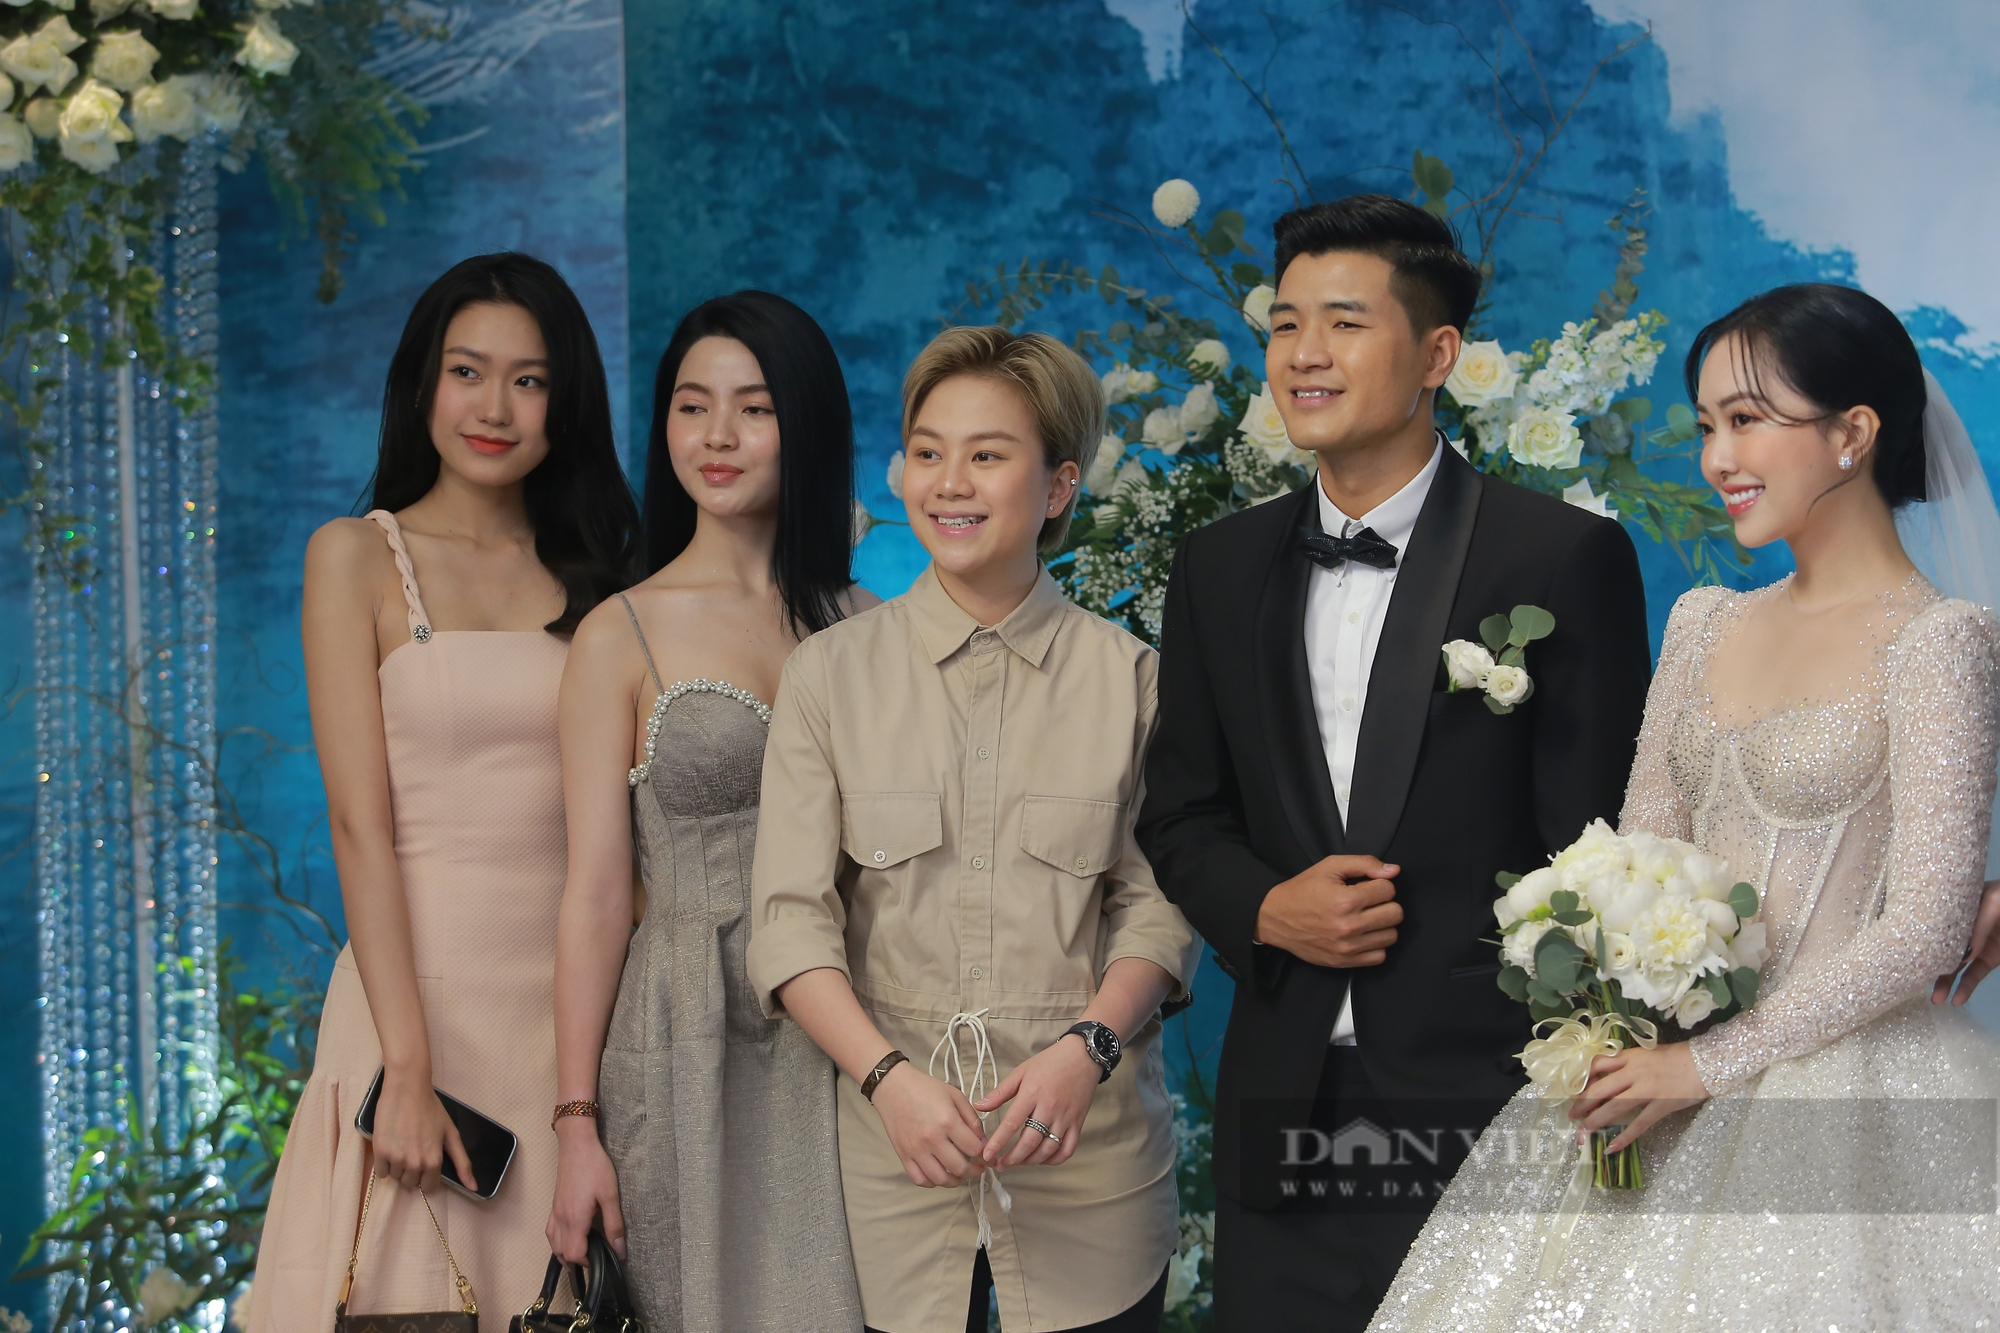 Dàn cầu thủ ĐT Việt Nam xuất hiện trong đám cưới của Đức Chinh - Ảnh 8.